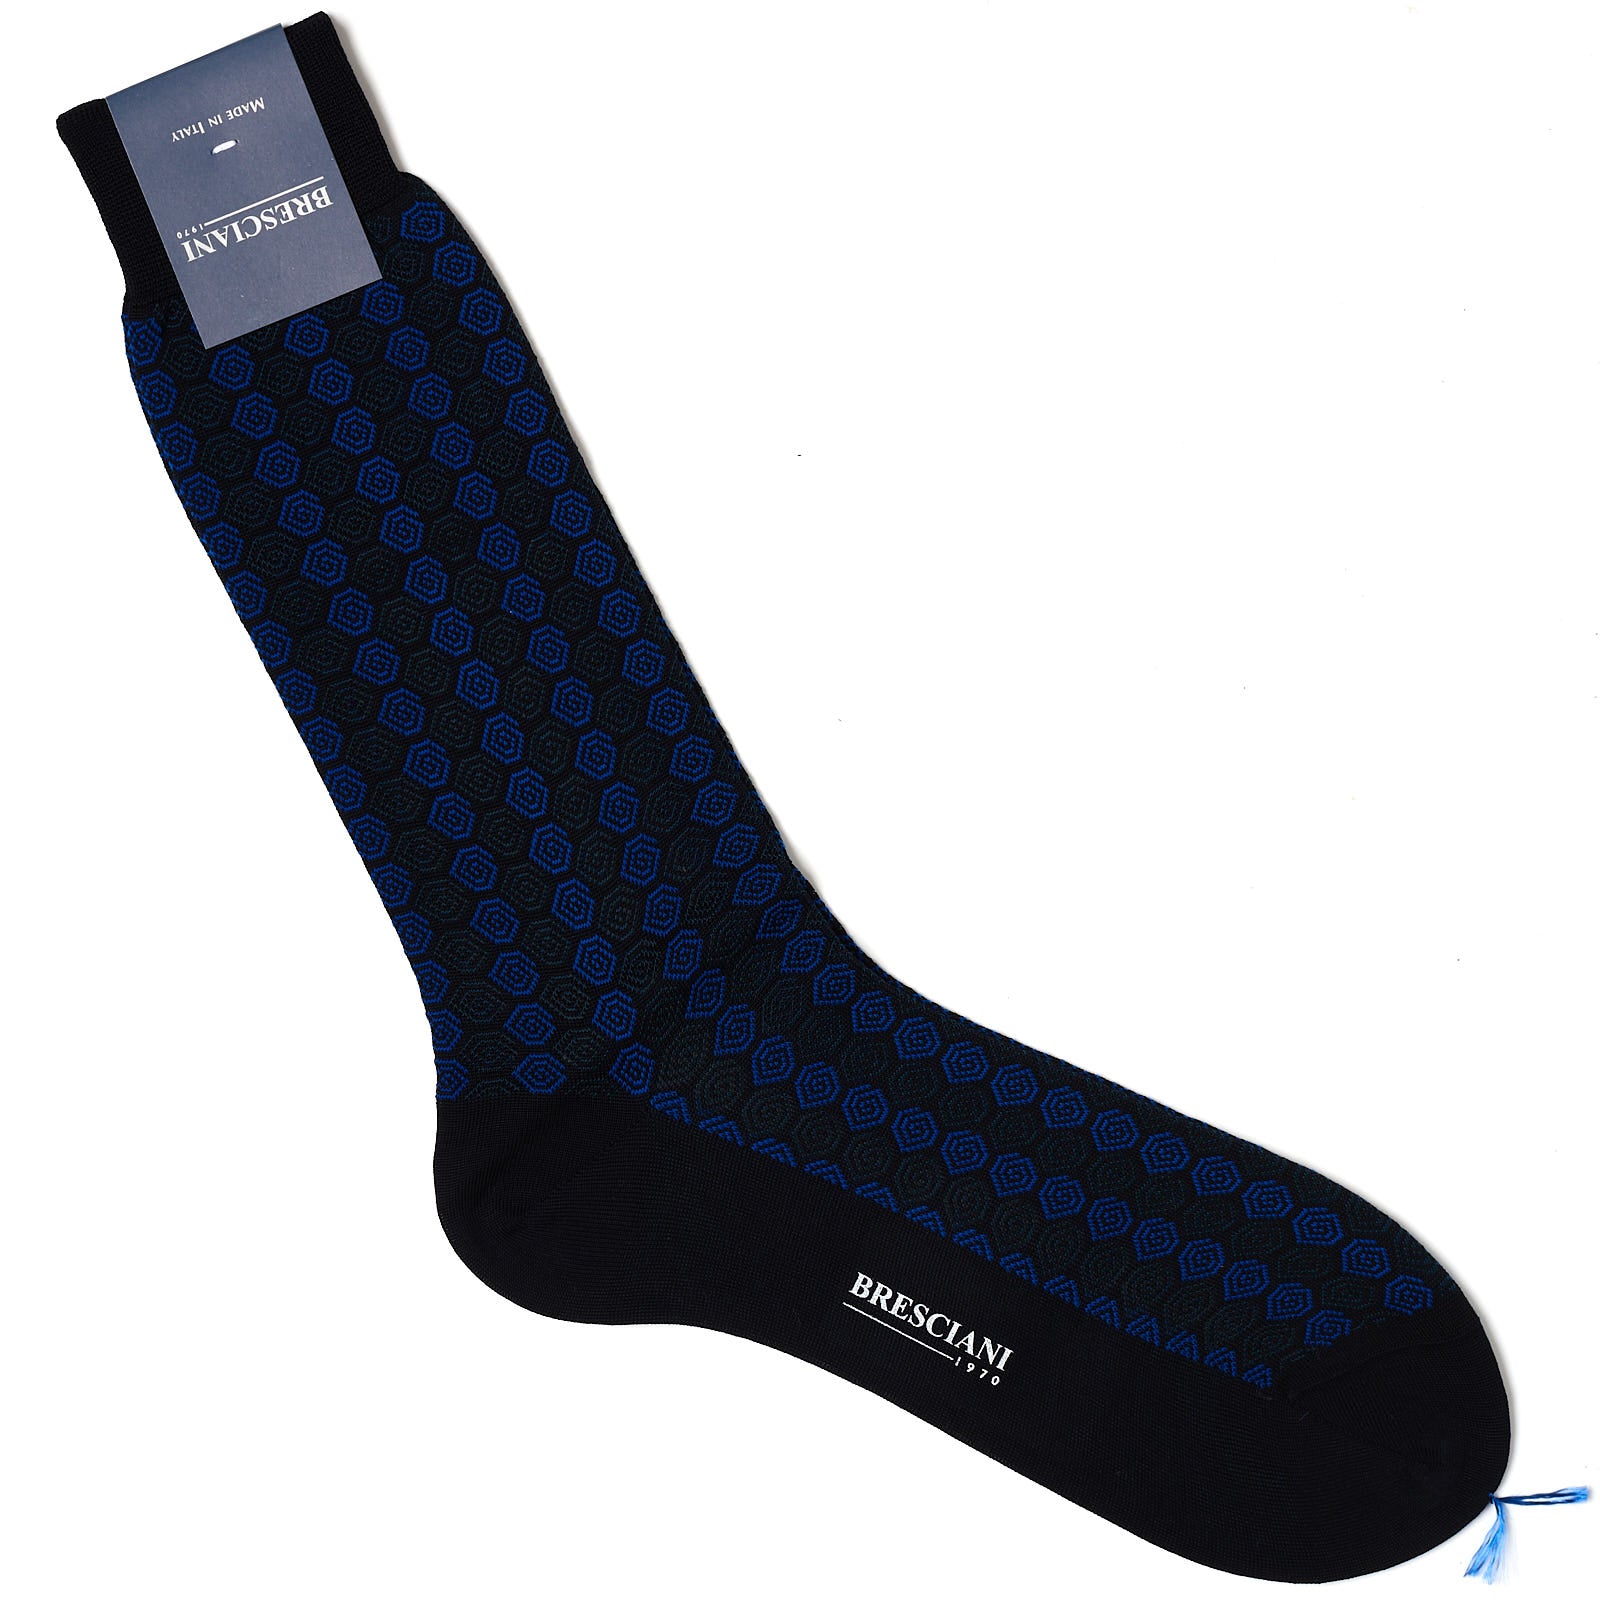 BRESCIANI Cotton Macro-Design Mid Calf Length Socks US M-L BRESCIANI